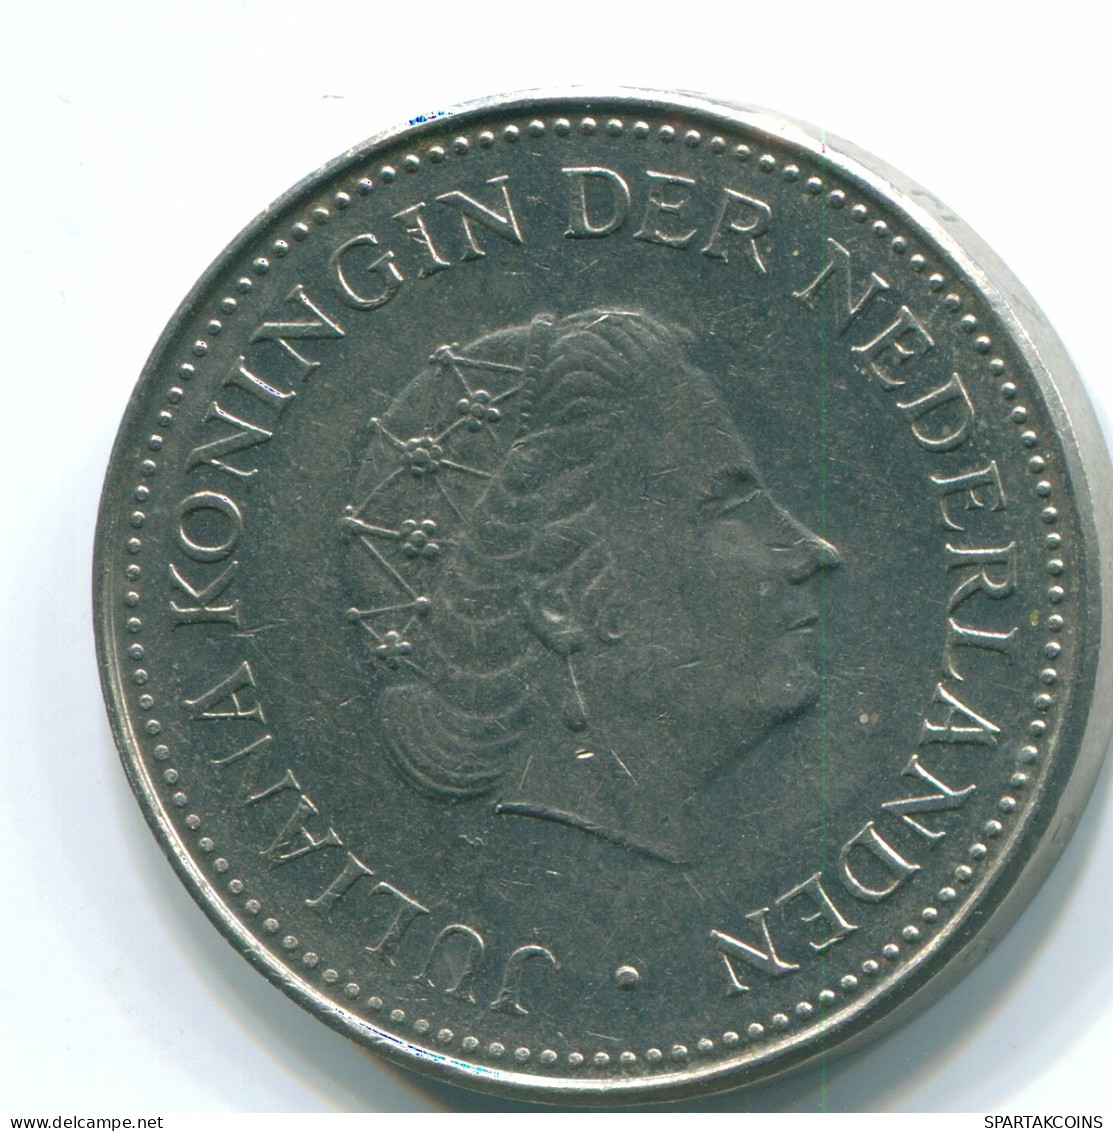 1 GULDEN 1971 ANTILLAS NEERLANDESAS Nickel Colonial Moneda #S11926.E.A - Netherlands Antilles